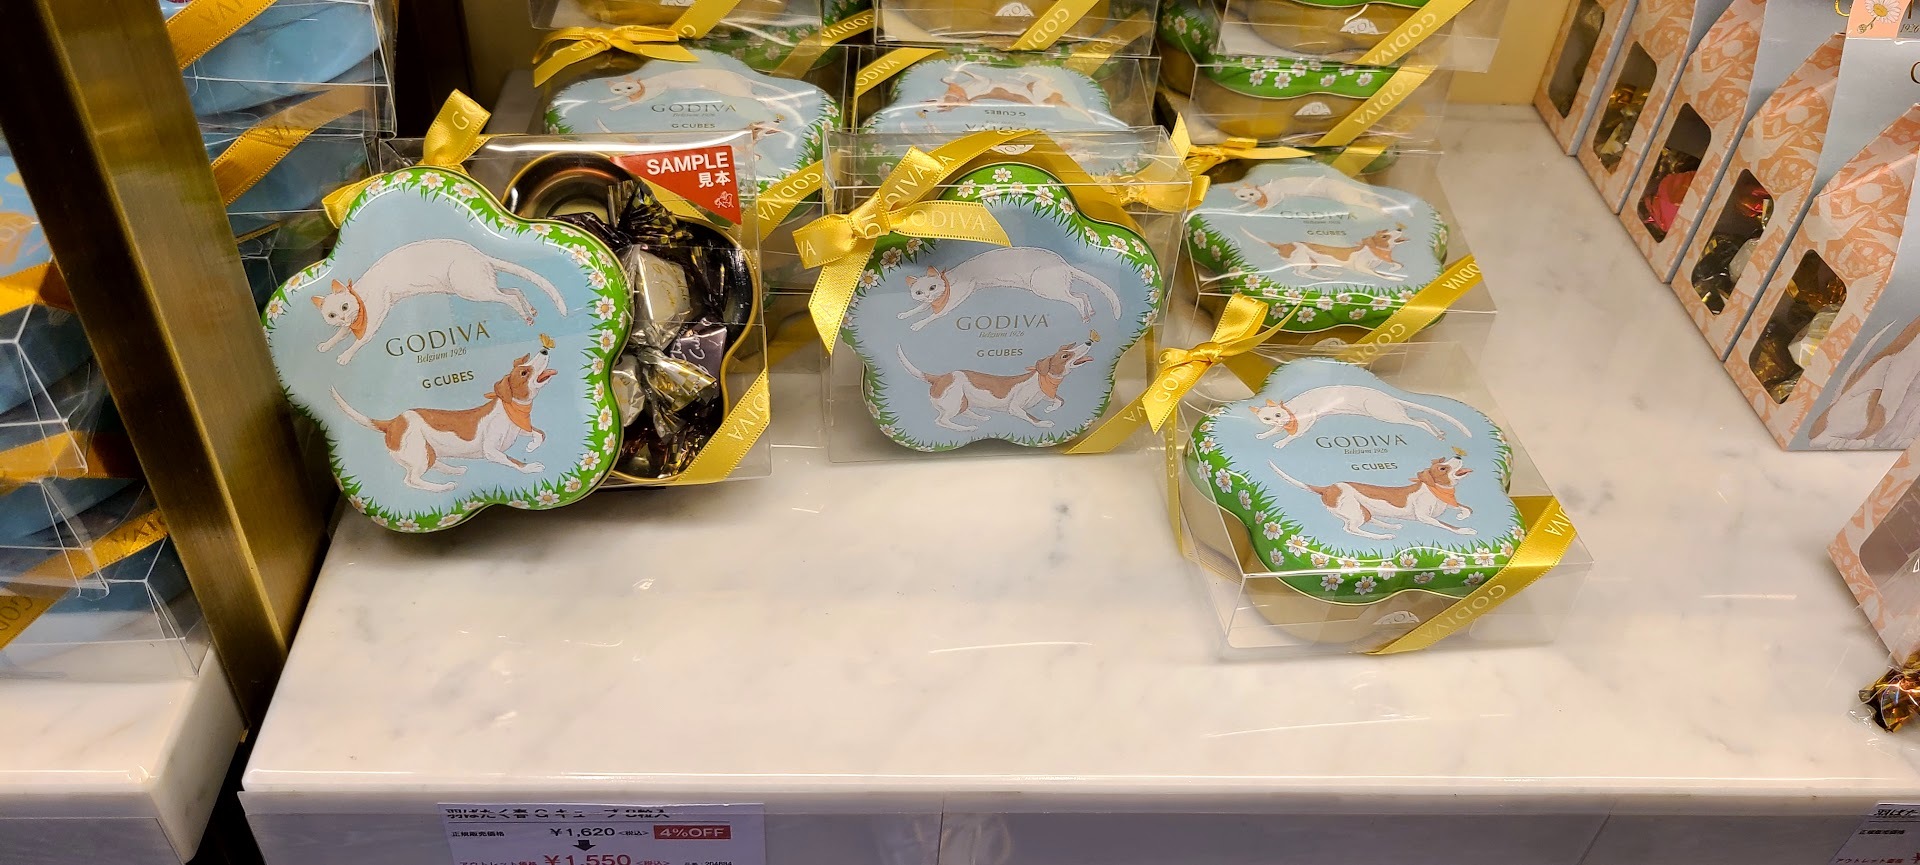 ゴディバ御殿場プレミアムアウトレット激安品 (25)1550円のわんことねこ缶